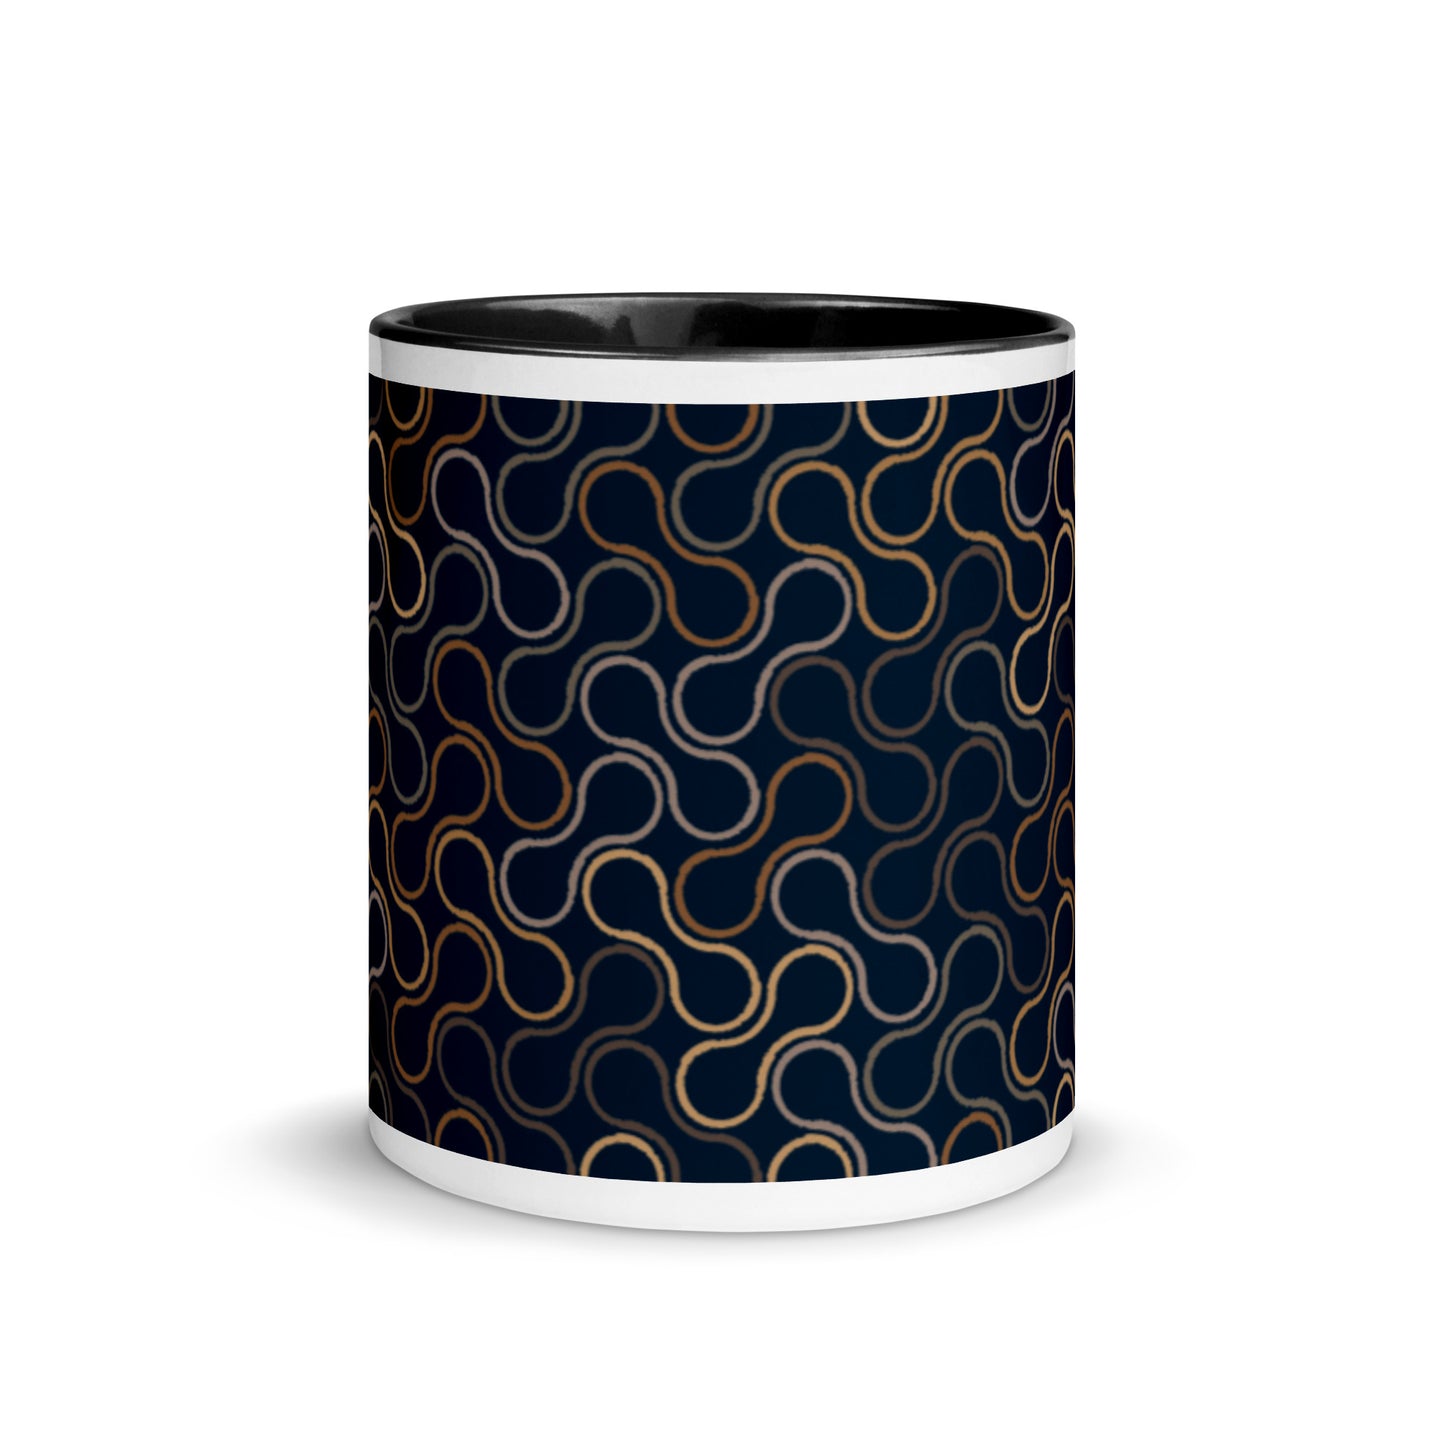 Elegant - Sustainably Made Coffee Mug